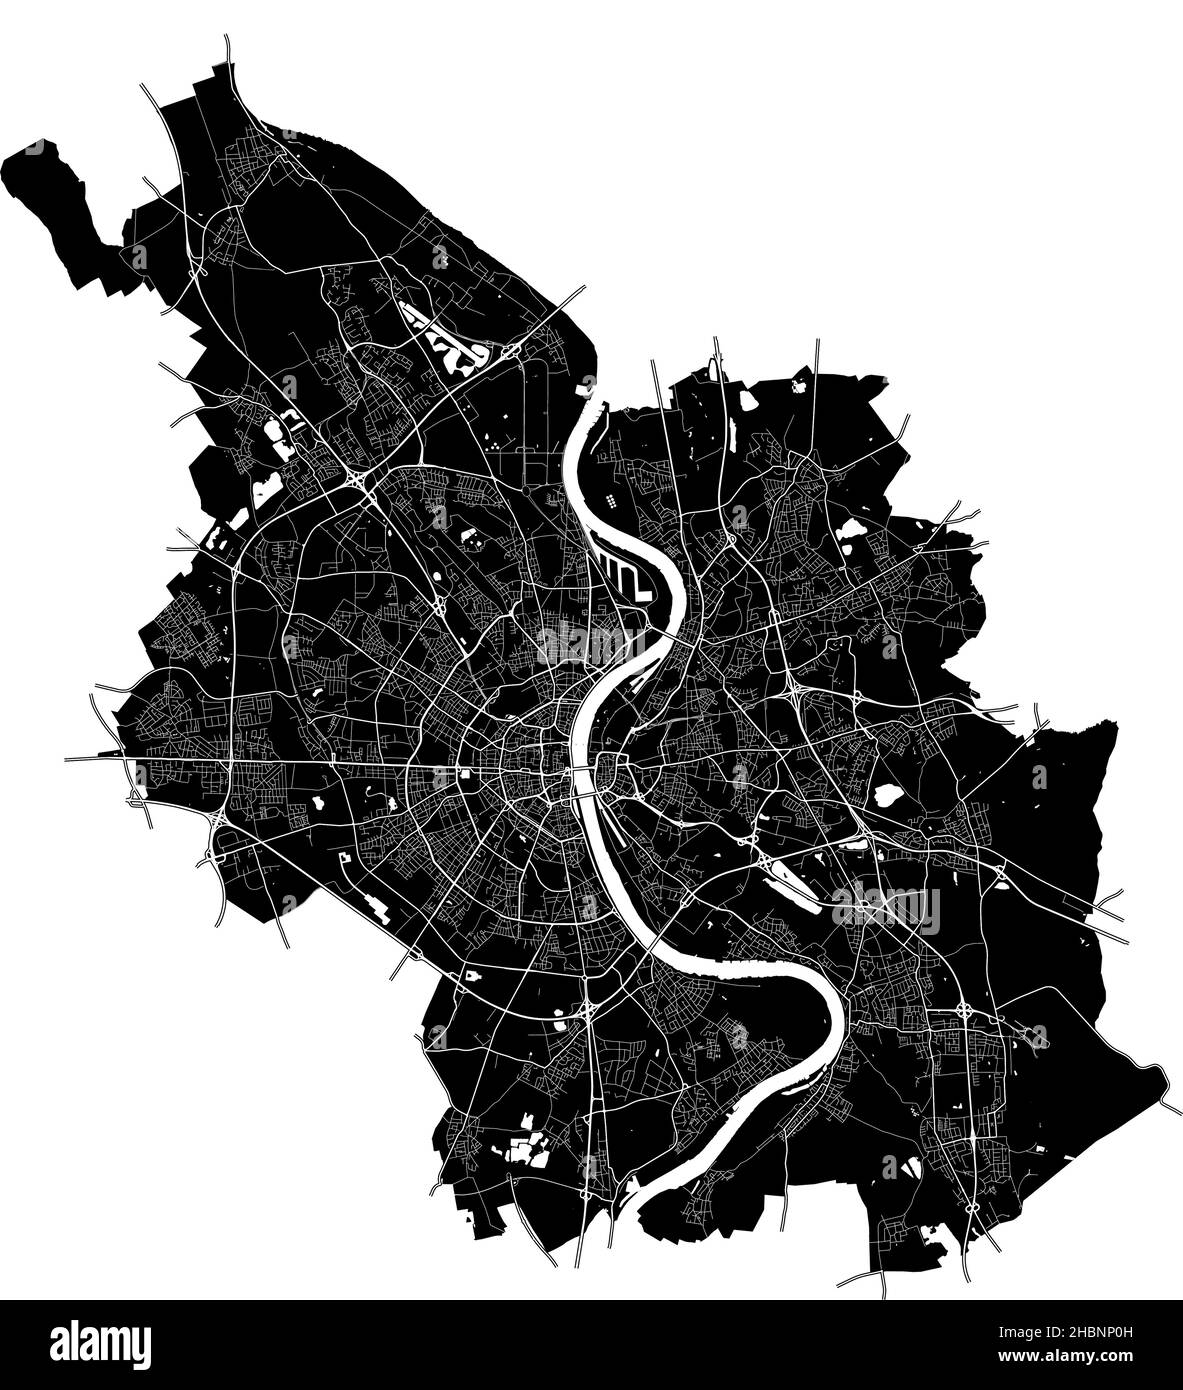 Colonia, Renania settentrionale-Vestfalia, Germania, Germania, mappa vettoriale ad alta risoluzione con confini della città e percorsi modificabili. La mappa della città è stata disegnata con wh Illustrazione Vettoriale